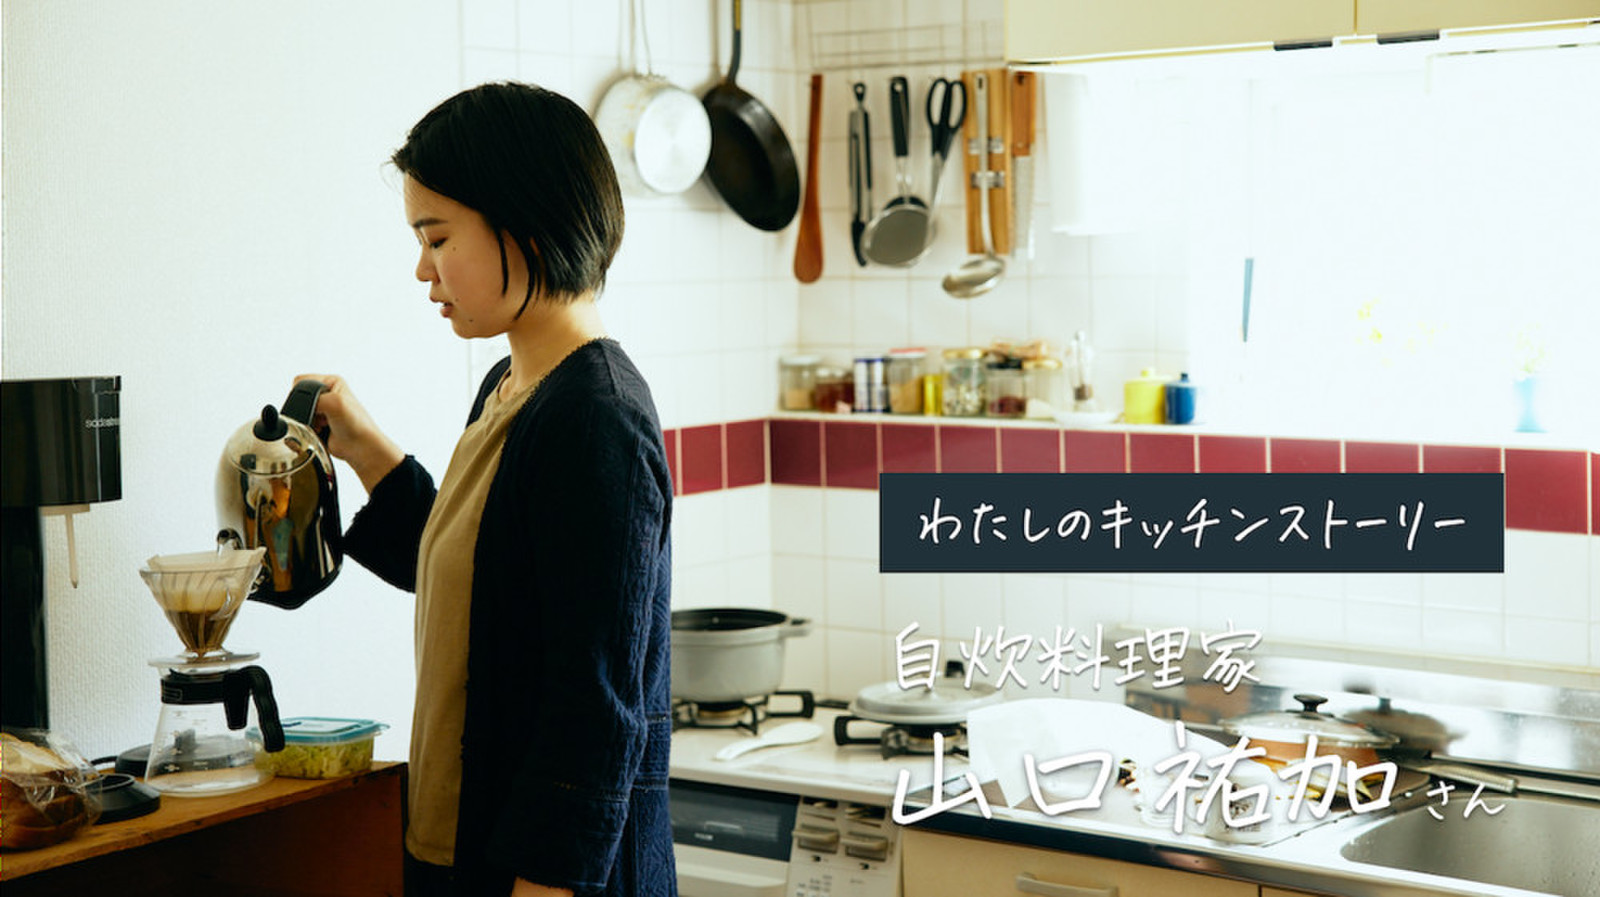 自炊料理家 山口祐加さんの自炊がたのしく続く“等身大”キッチン。憧れより、「わたしにもできる」を届けたい